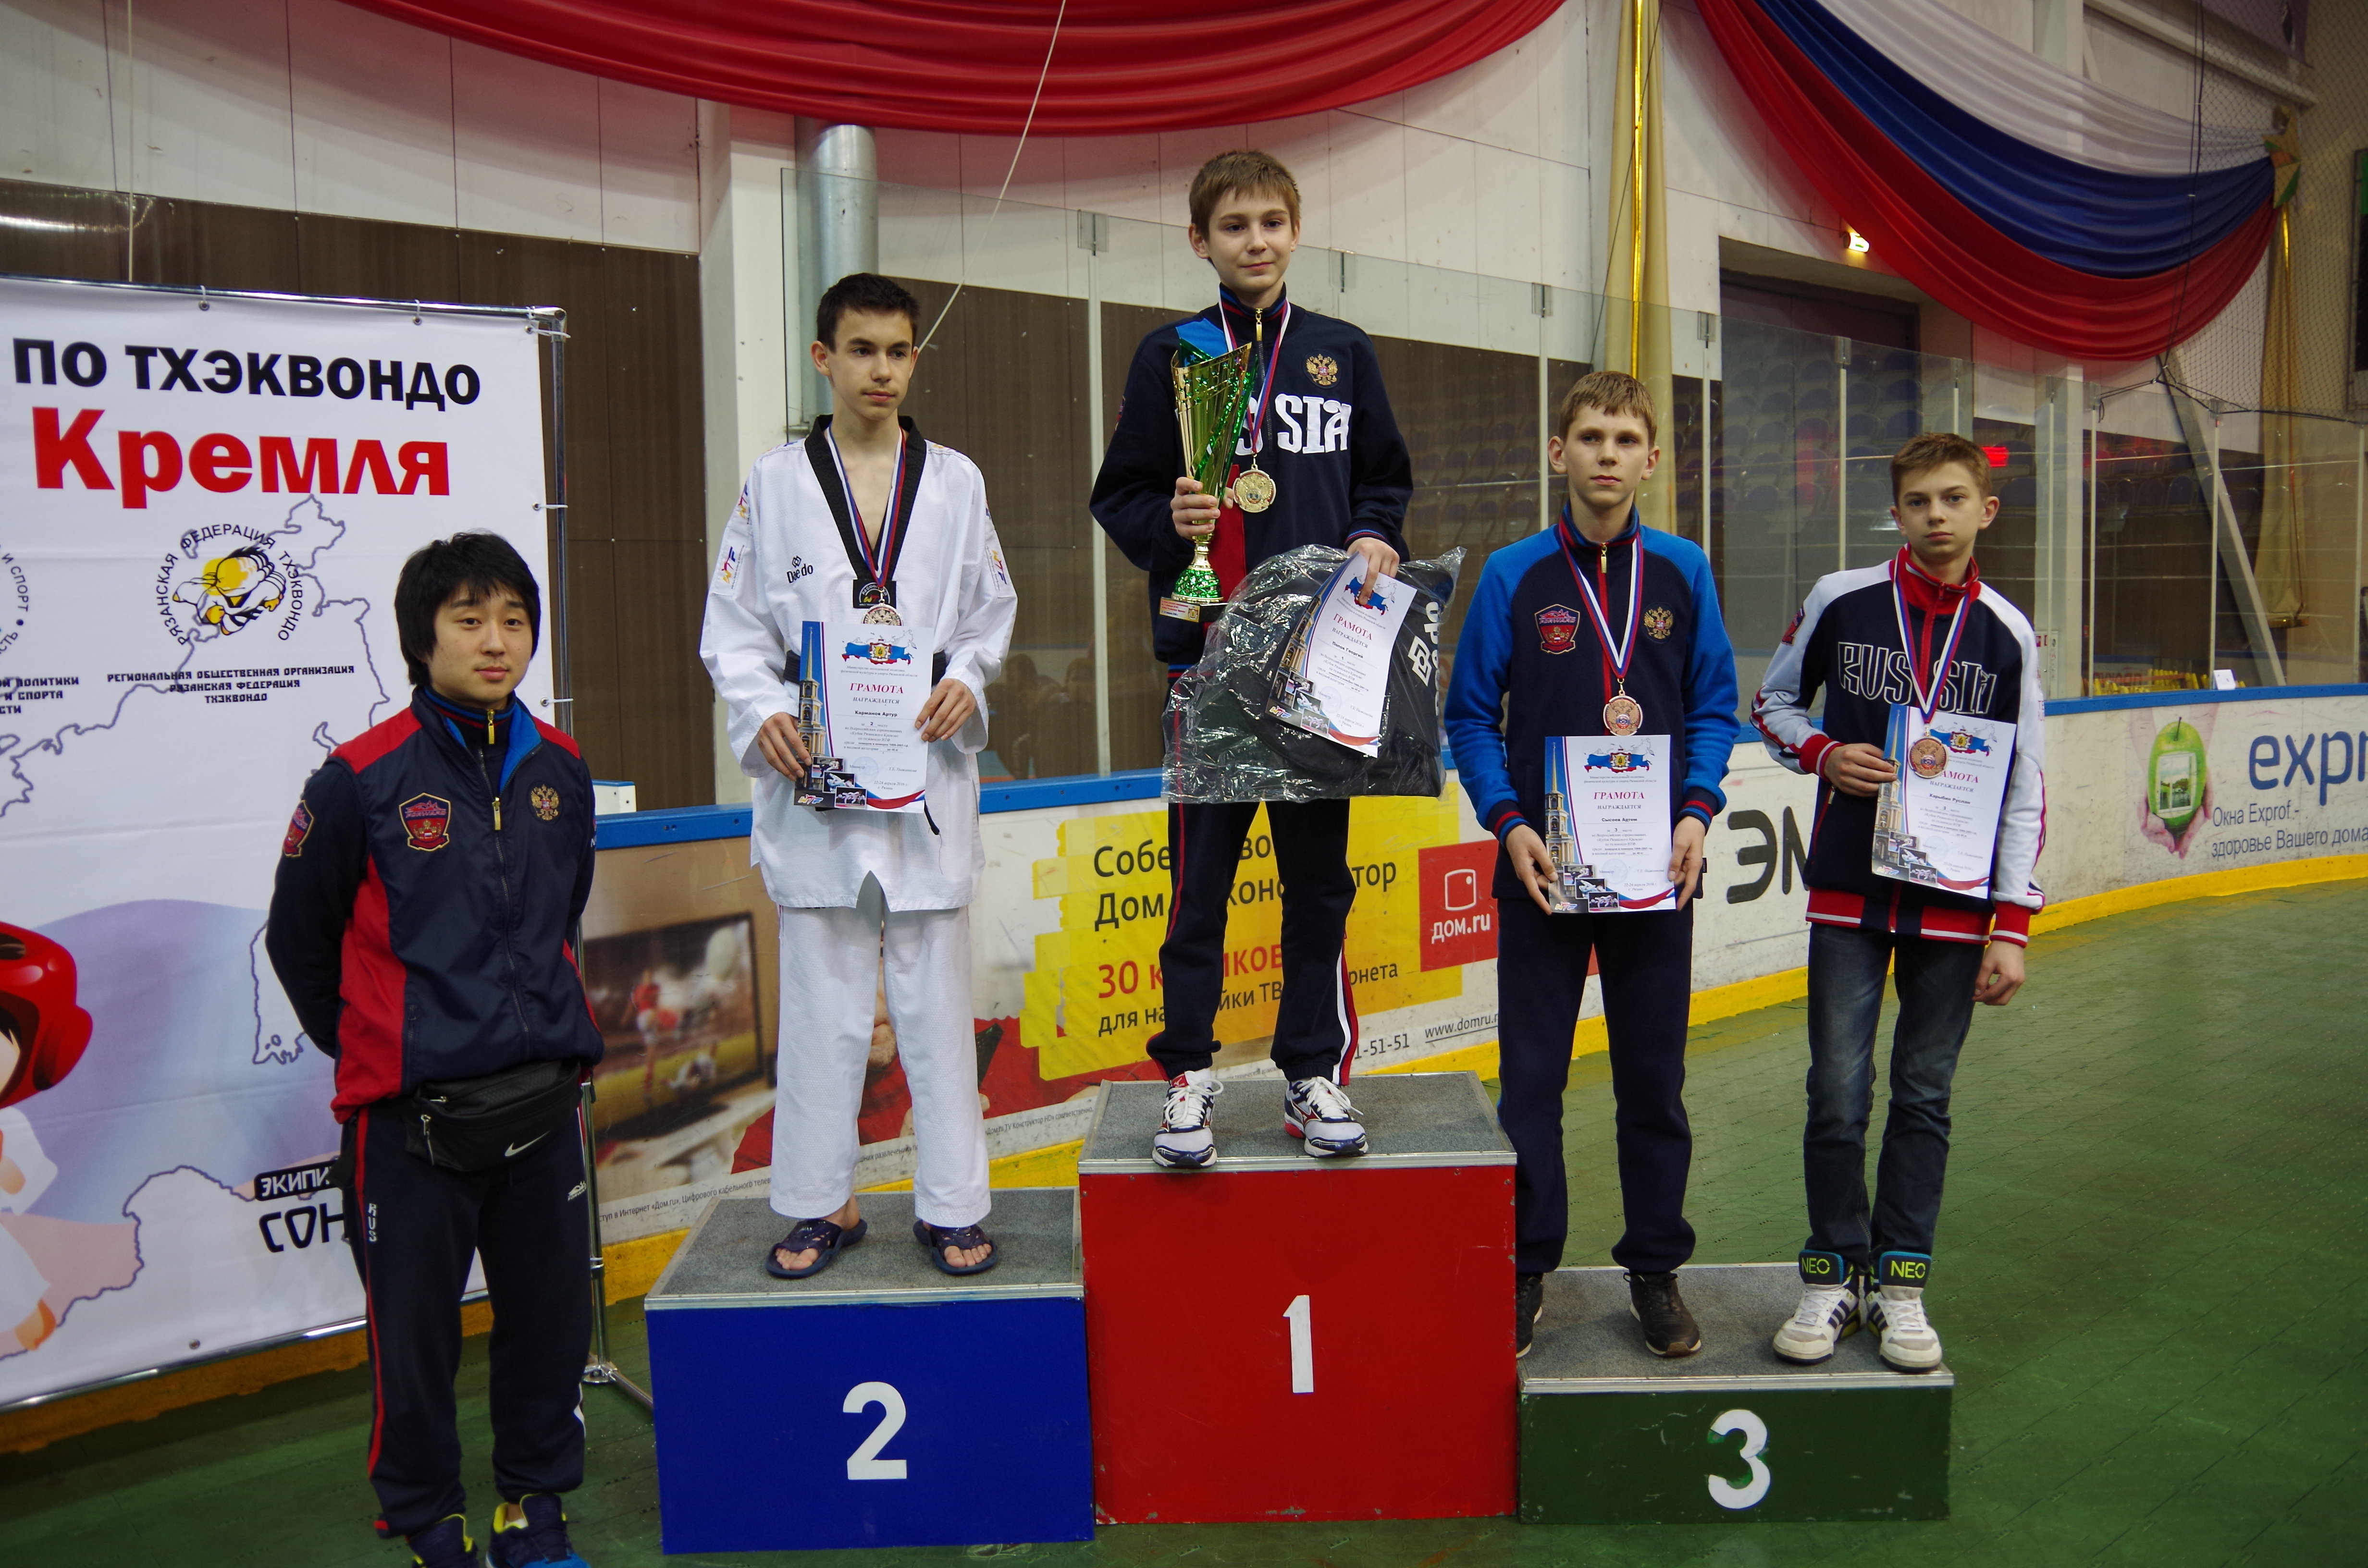 Девять медалей пензенских спортсменов на студенческих соревнованиях